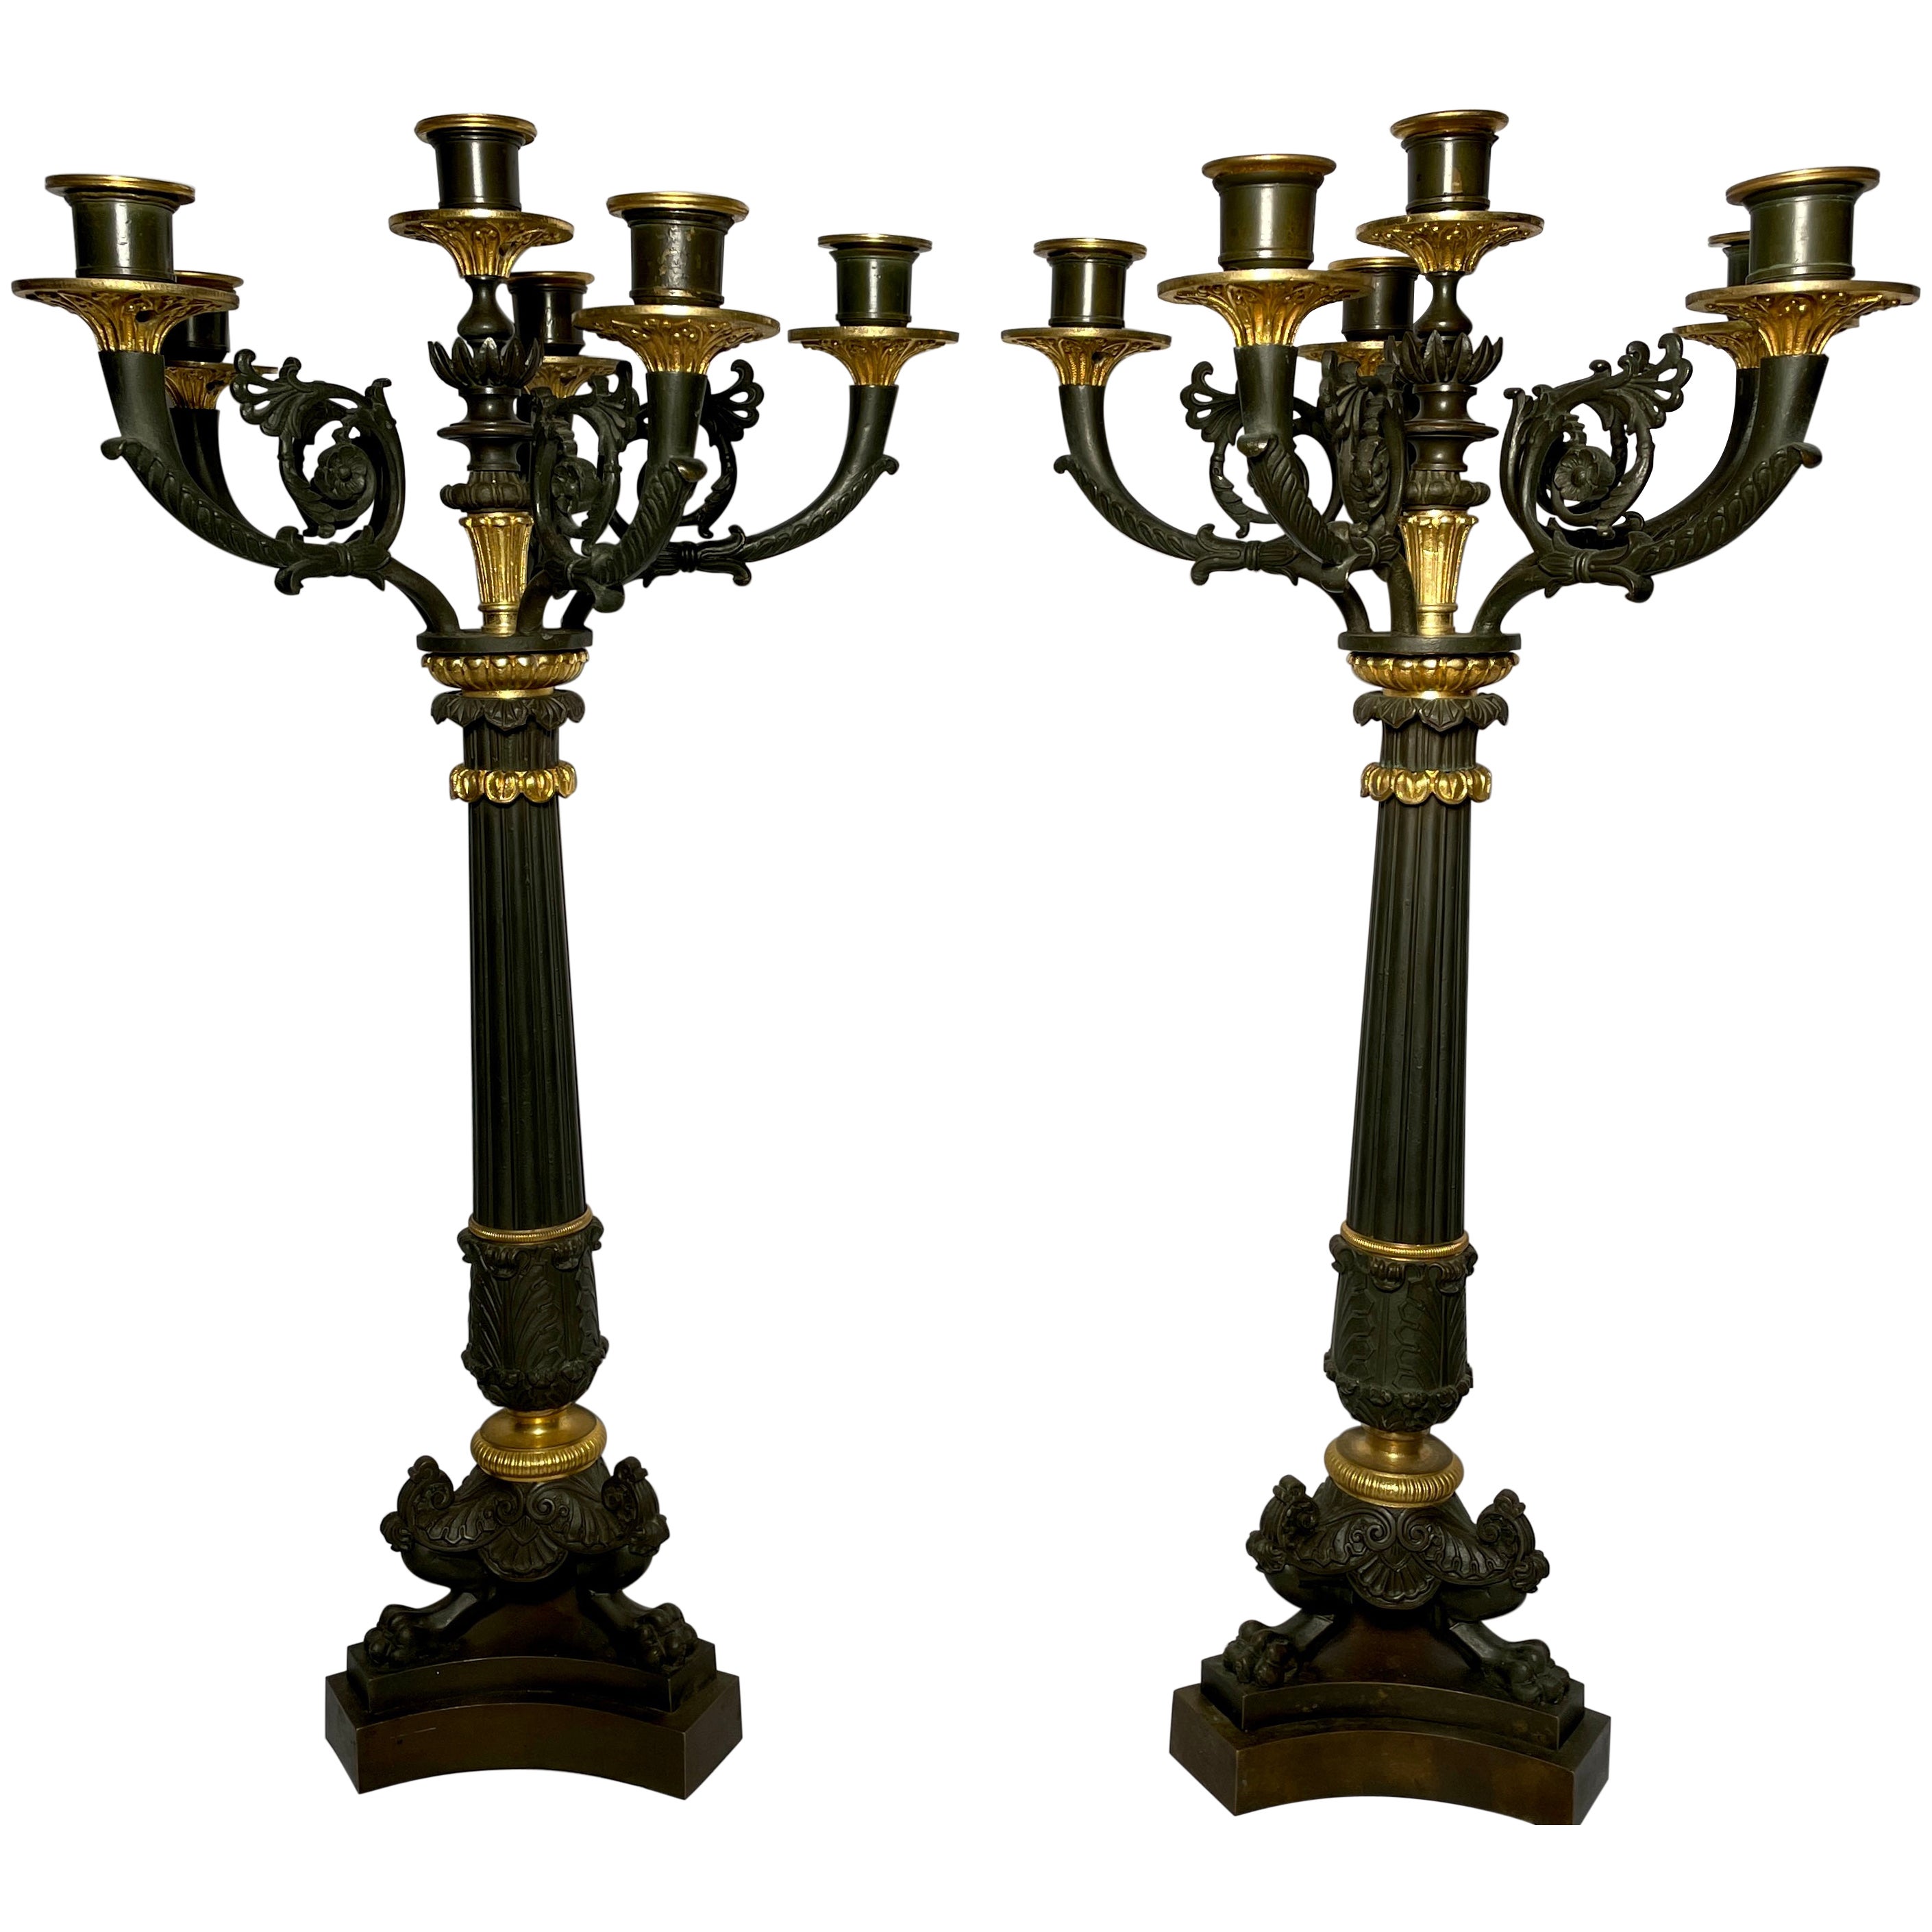 Paire de candélabres français anciens Charles X en bronze doré et bronze patiné, vers 1880